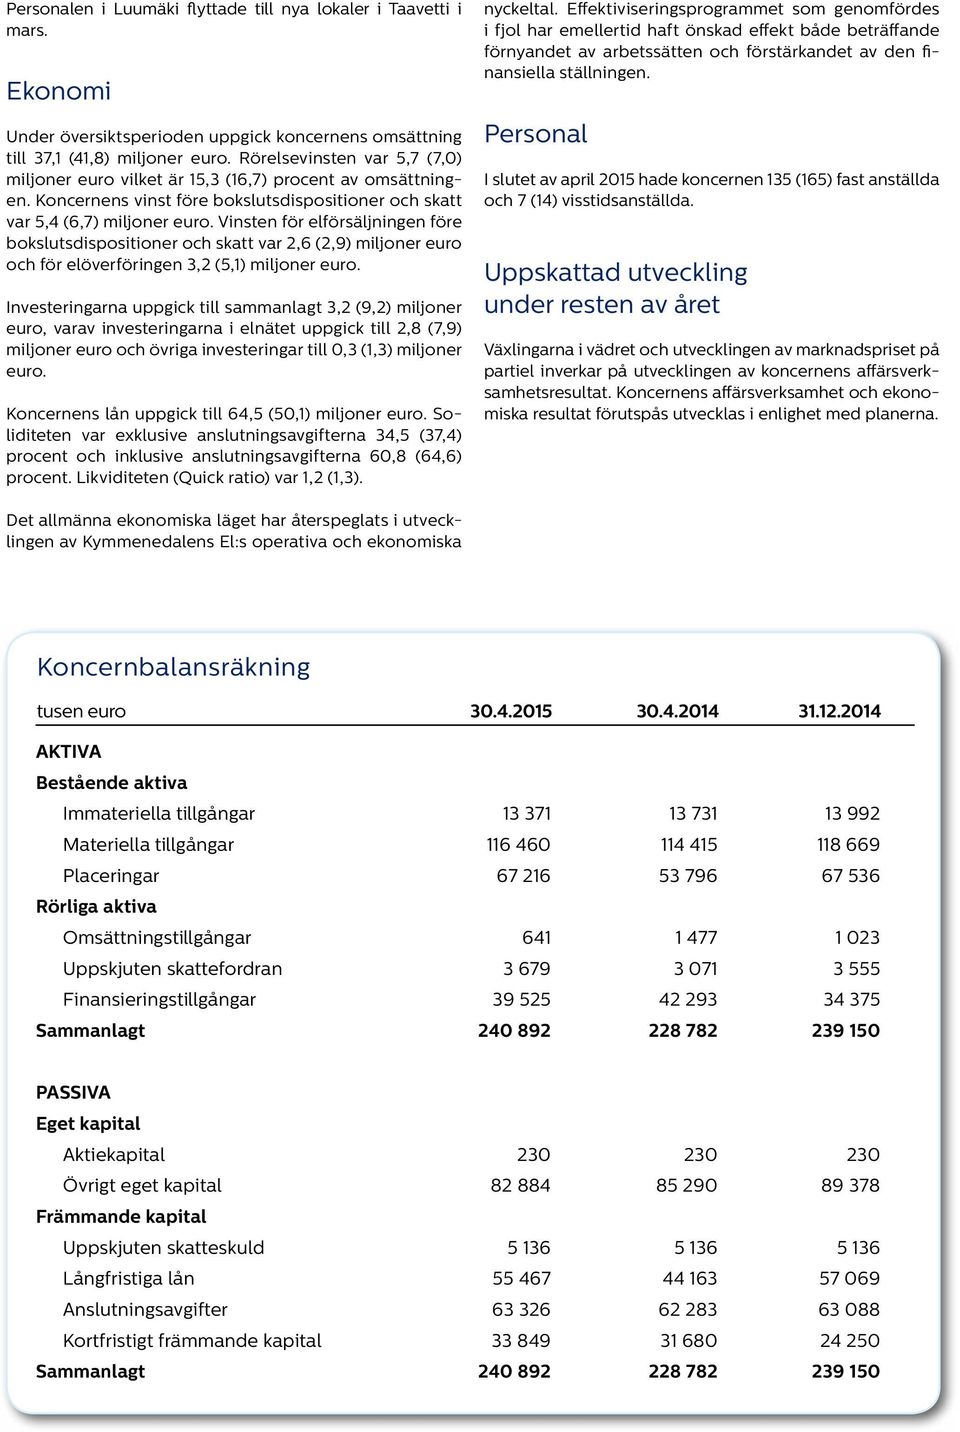 Vinsten för elförsäljningen före bokslutsdispositioner och skatt var 2,6 (2,9) miljoner euro och för elöverföringen 3,2 (5,1) miljoner euro.